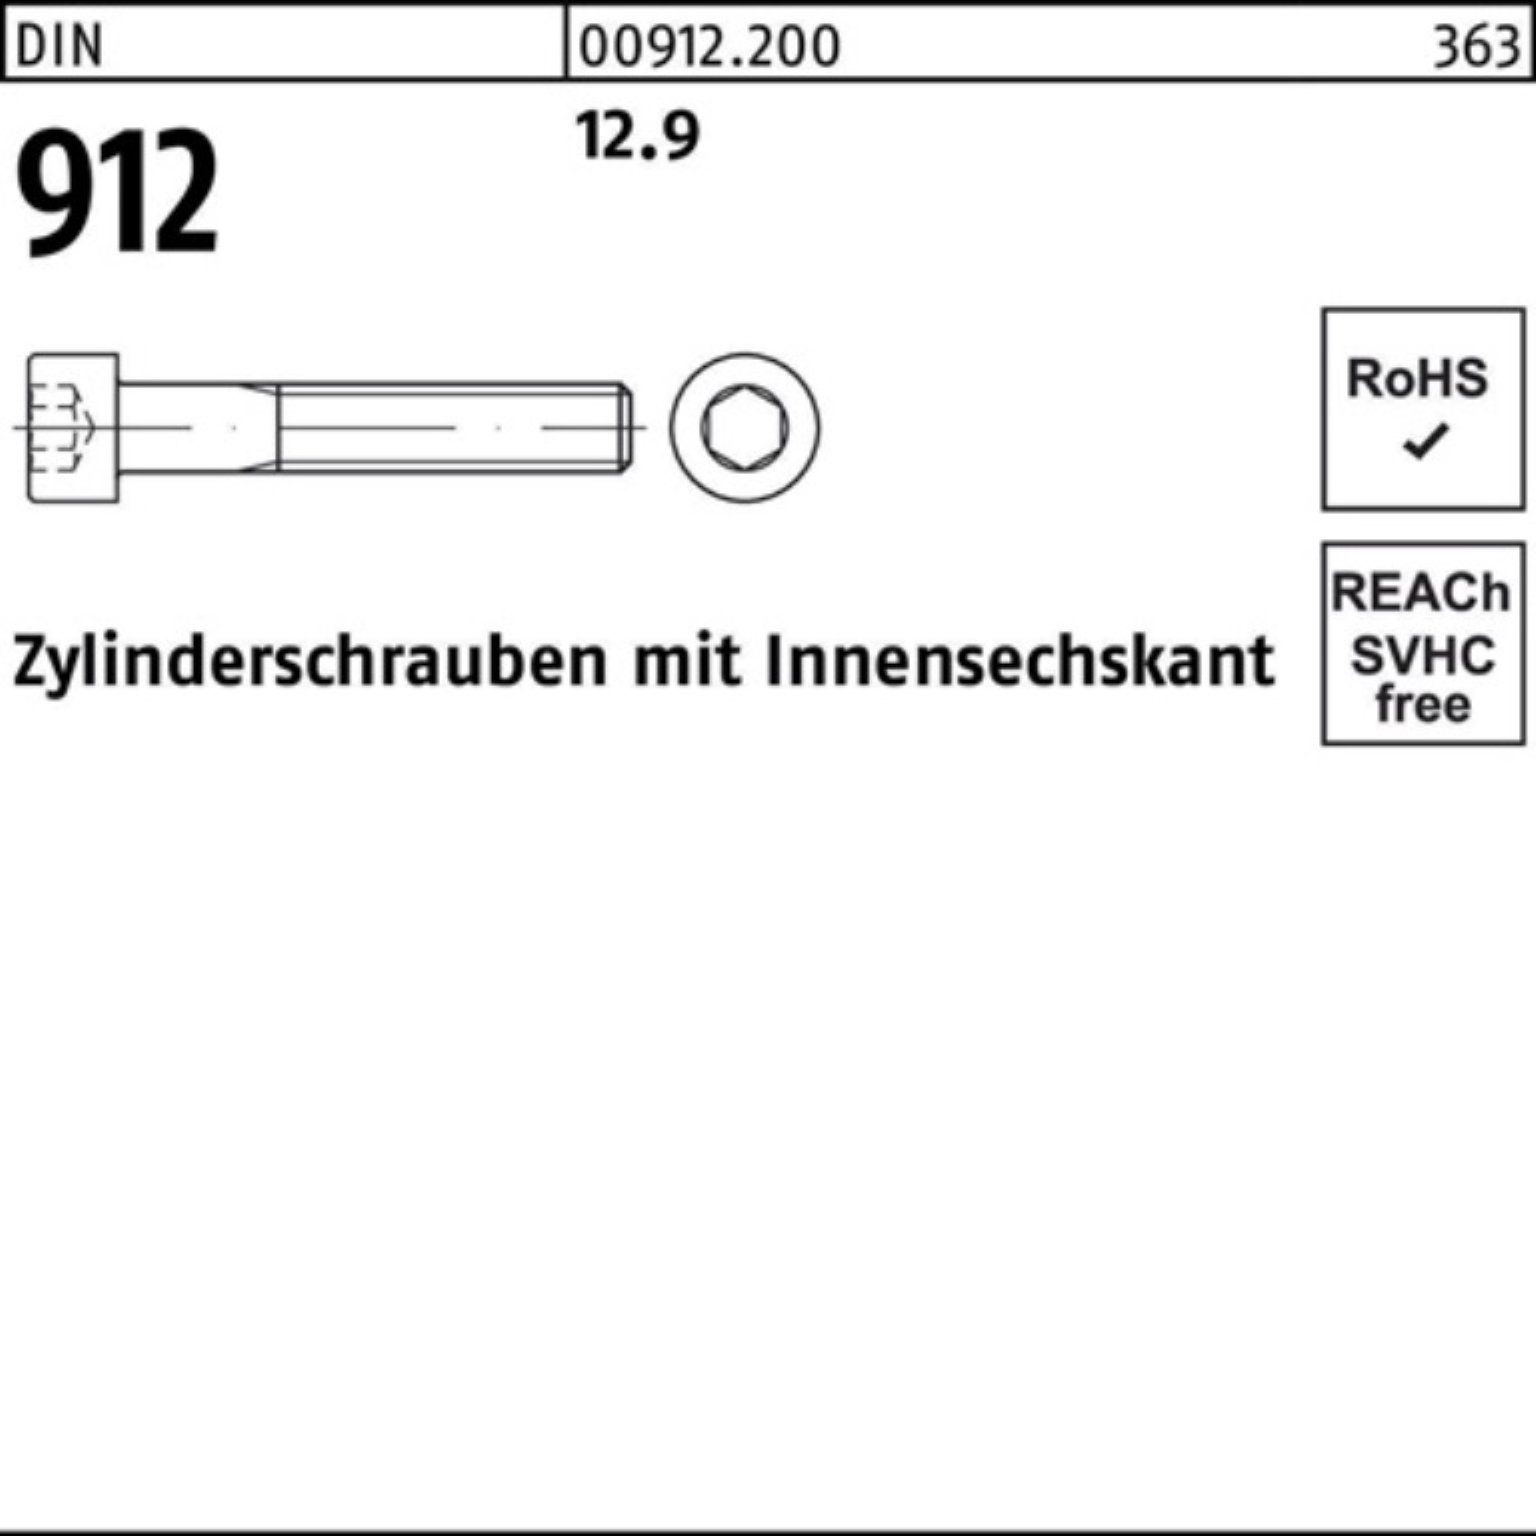 120 1 DIN Zylinderschraube Zylinderschraube Reyher Innen-6kt 912 D Stück 100er Pack 12.9 M42x